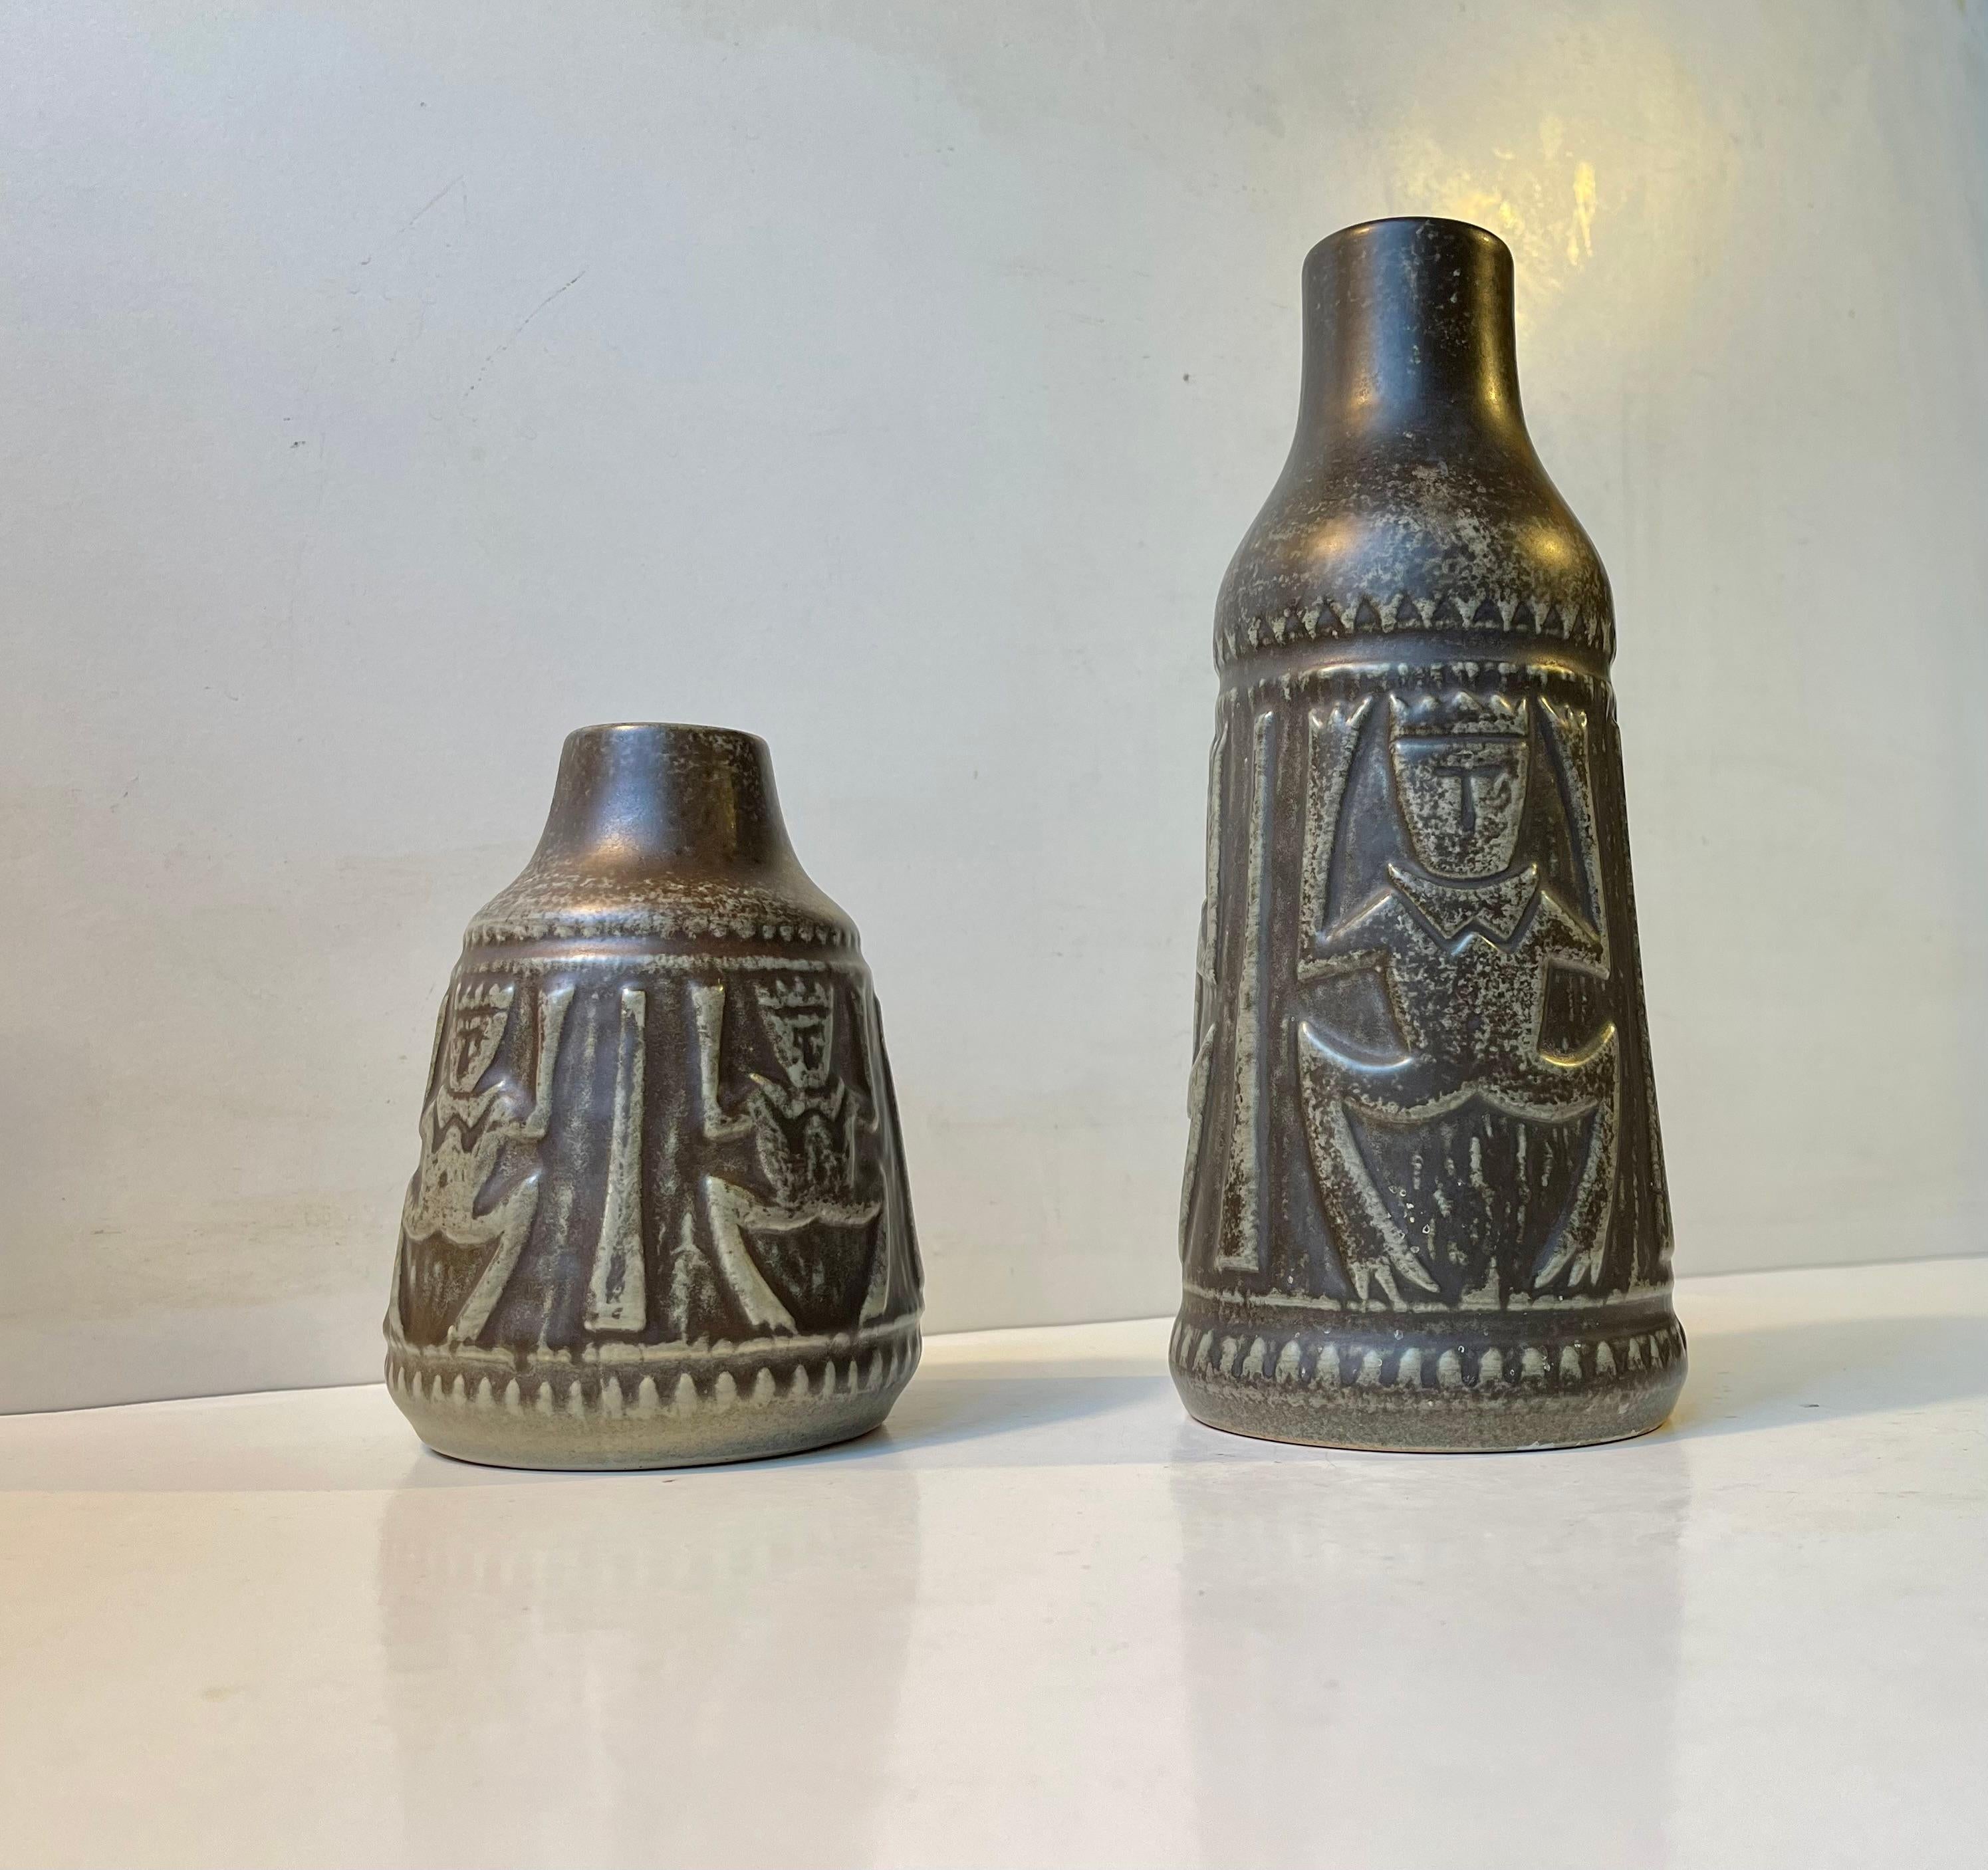 Late 20th Century Danish Modern Ceramic Troll Vases by Johannes Pedersen & Gustav Ottesen, 1970s For Sale